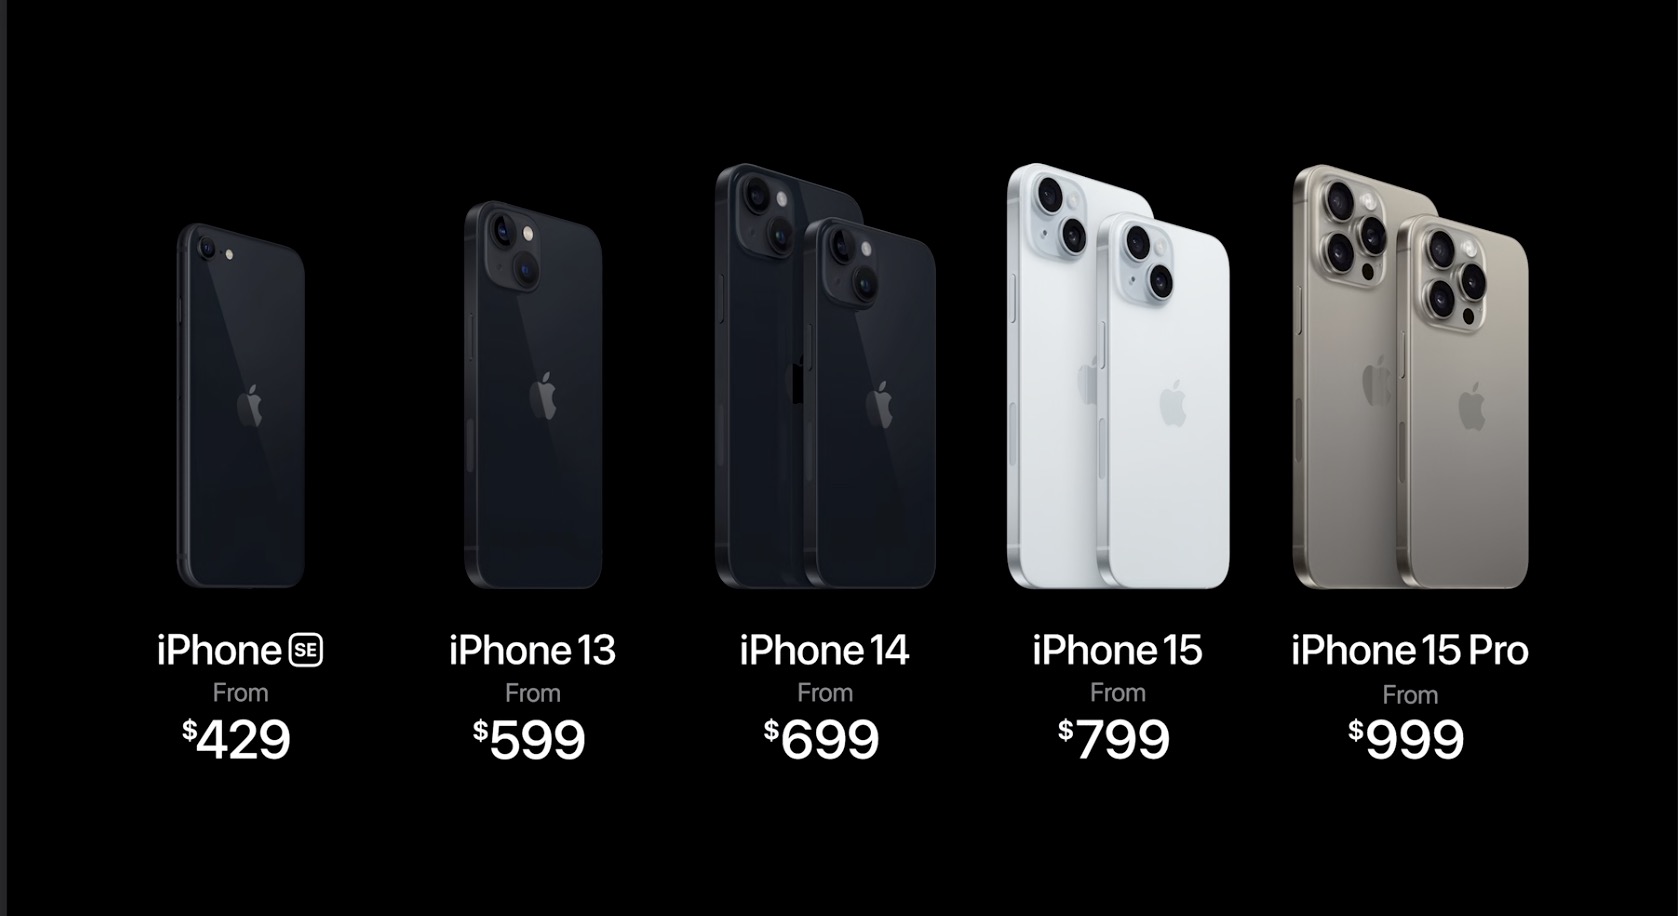 precios iphone 15 y iphone 15 pro